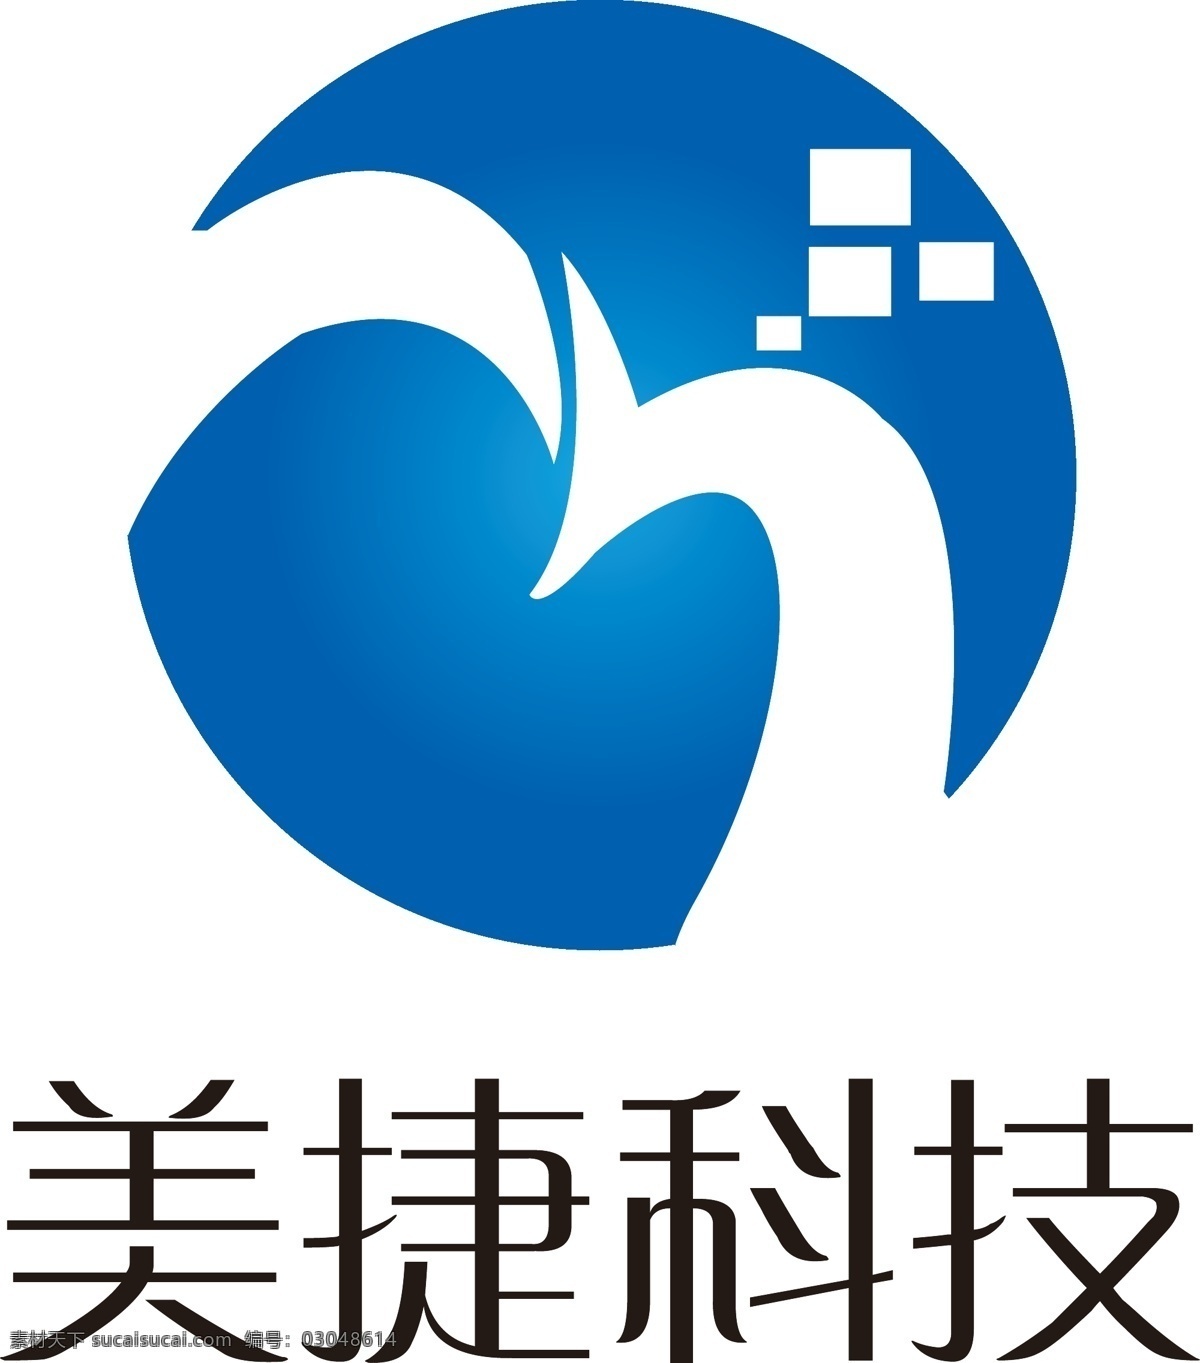 美捷科技 标志 原创logo 简约 蓝色 字母m 方框 圆圈